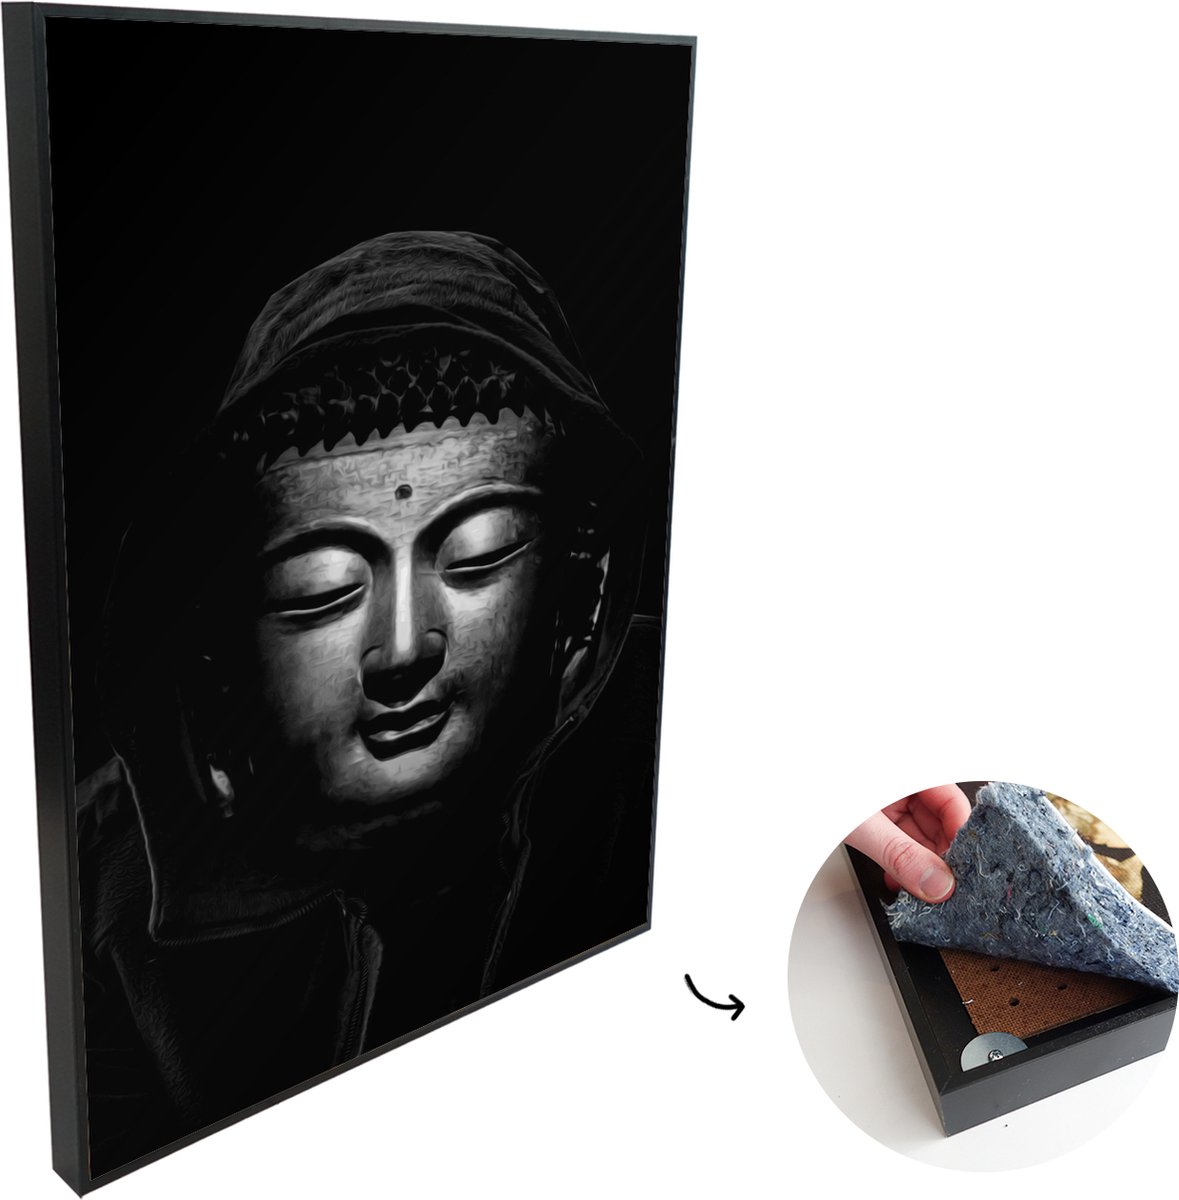 Akoestische Panelen - Geluidsisolatie - Akoestisch Wandpaneel - Wanddecoratie - Schilderij - 120x180 cm - Koperen Boeddha met een capuchon op voor een simpele achtergrond - zwart wit - Geluidsdemper - Isolatie platen - Studio Schuim